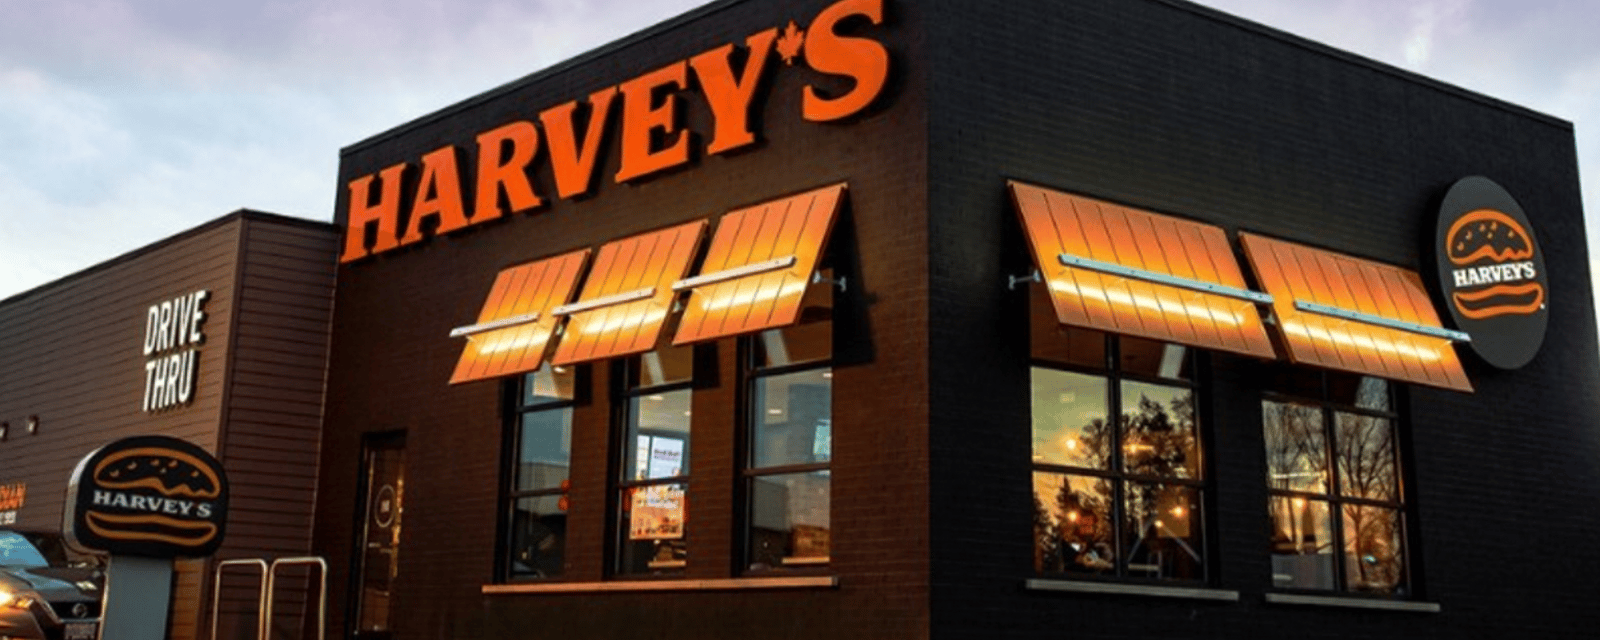 Harvey's célèbre ses 65 ans et offre des hamburgers gratuits pour l'occasion